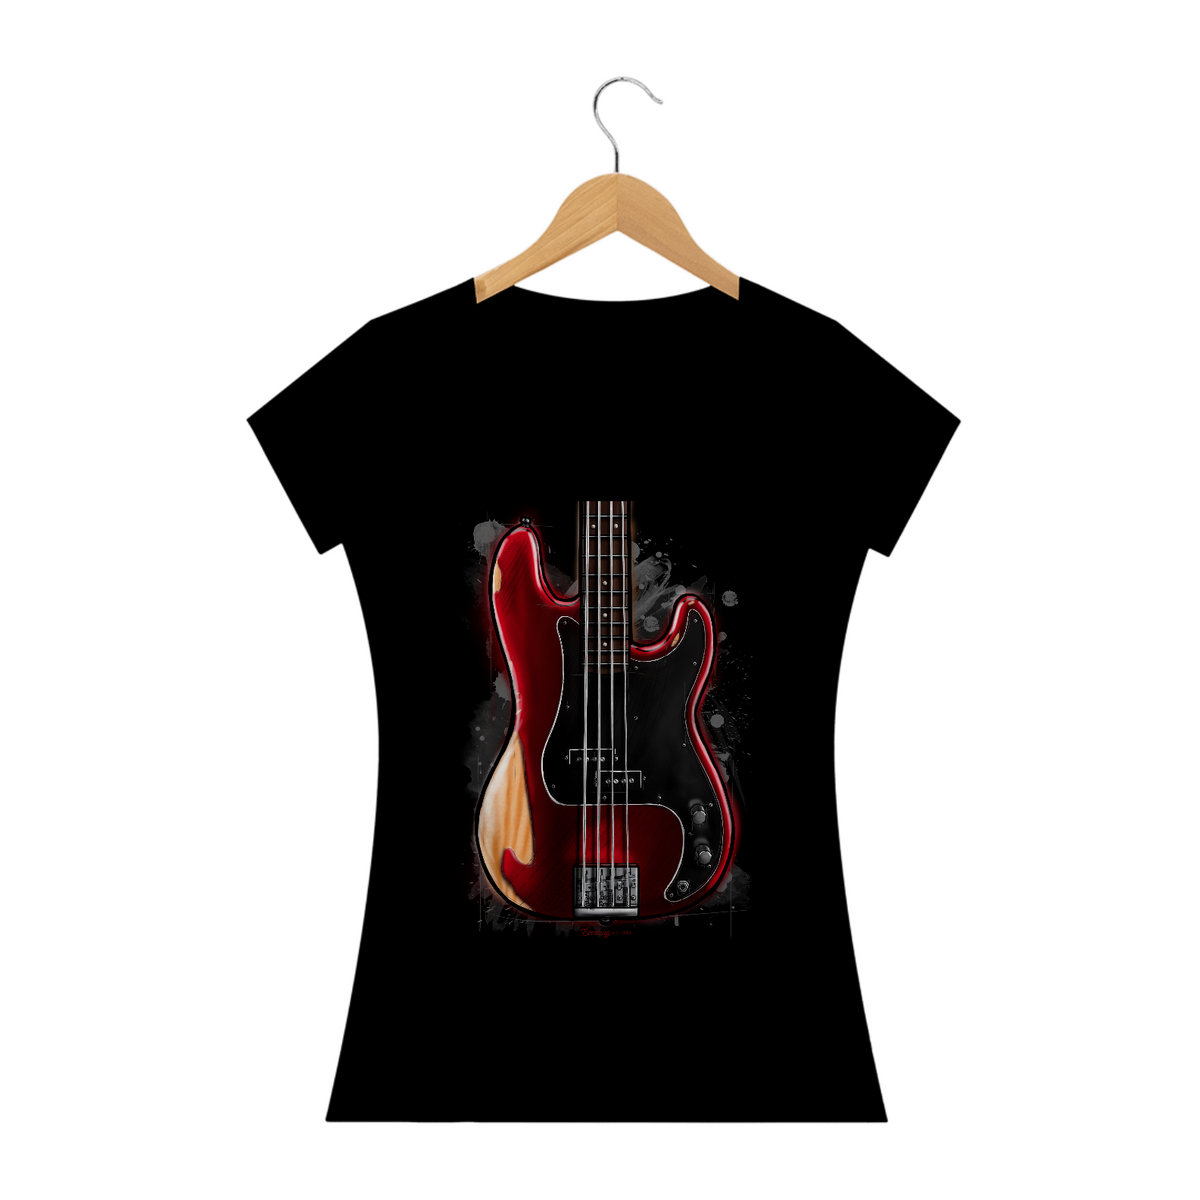 Nome do produto: Camiseta - Fender Nate Mendel Precision Bass